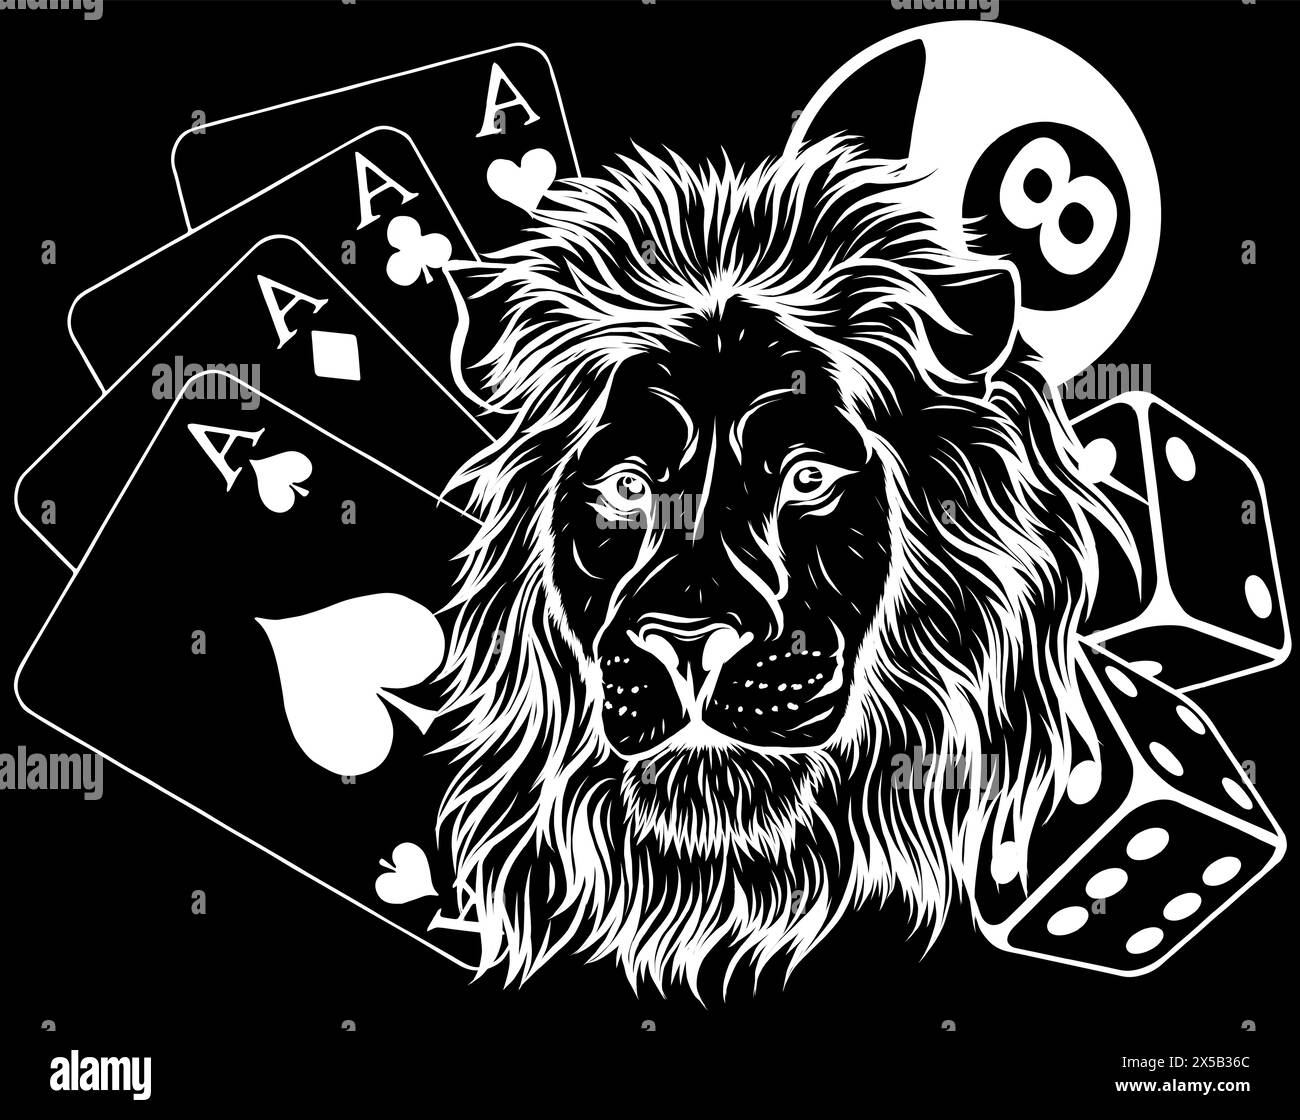 Weiße Silhouette des Lion Bet Casino-Logos auf schwarzem Hintergrund Vektor-Design Stock Vektor